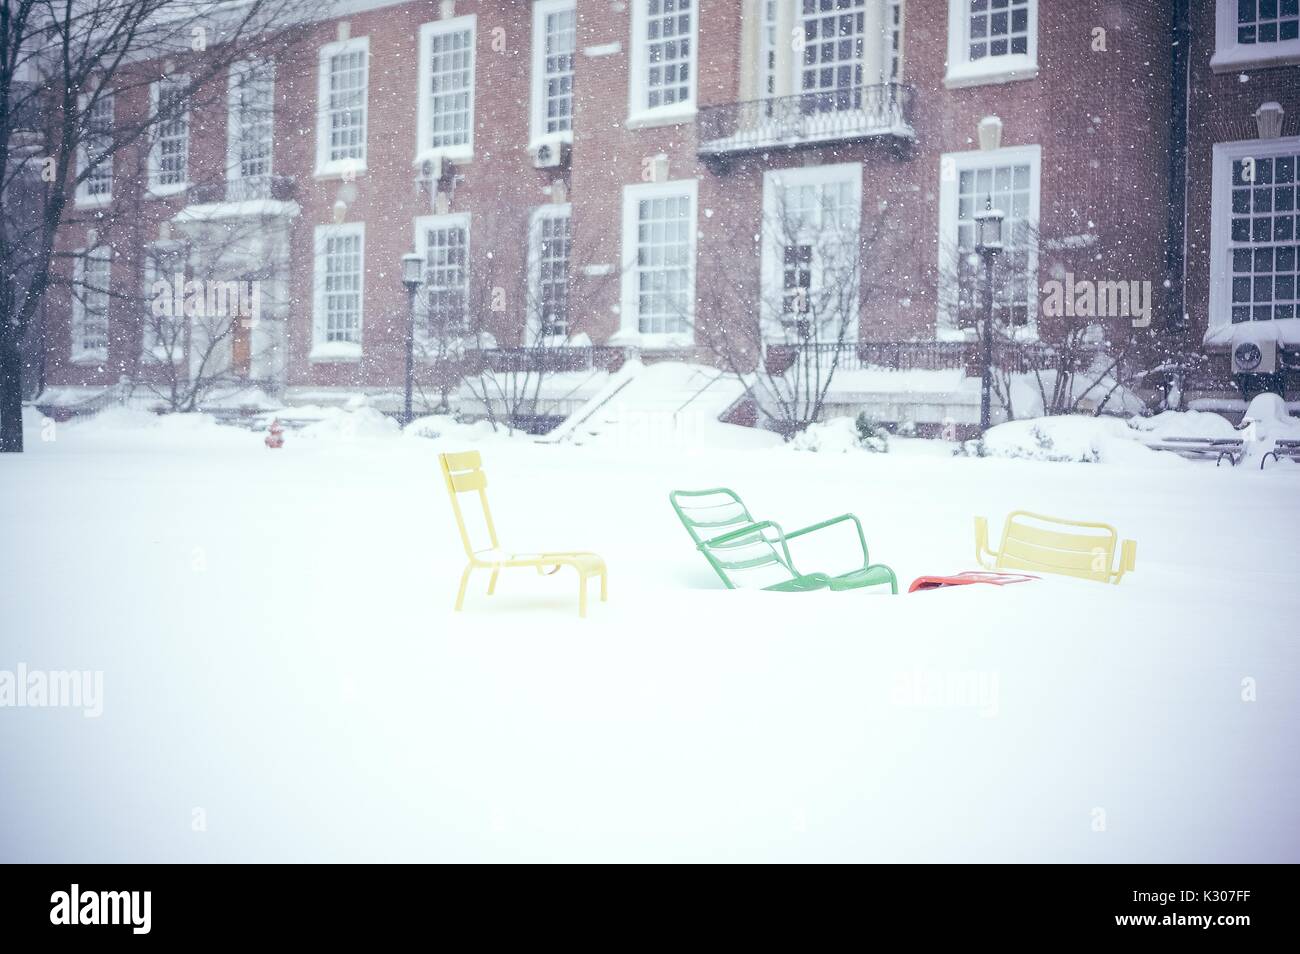 Trois chaises colorées reposer à couvert à trois pieds de neige en face d'un bâtiment en brique sur un quad neige à la Johns Hopkins University, Baltimore, Maryland, 2016. Banque D'Images